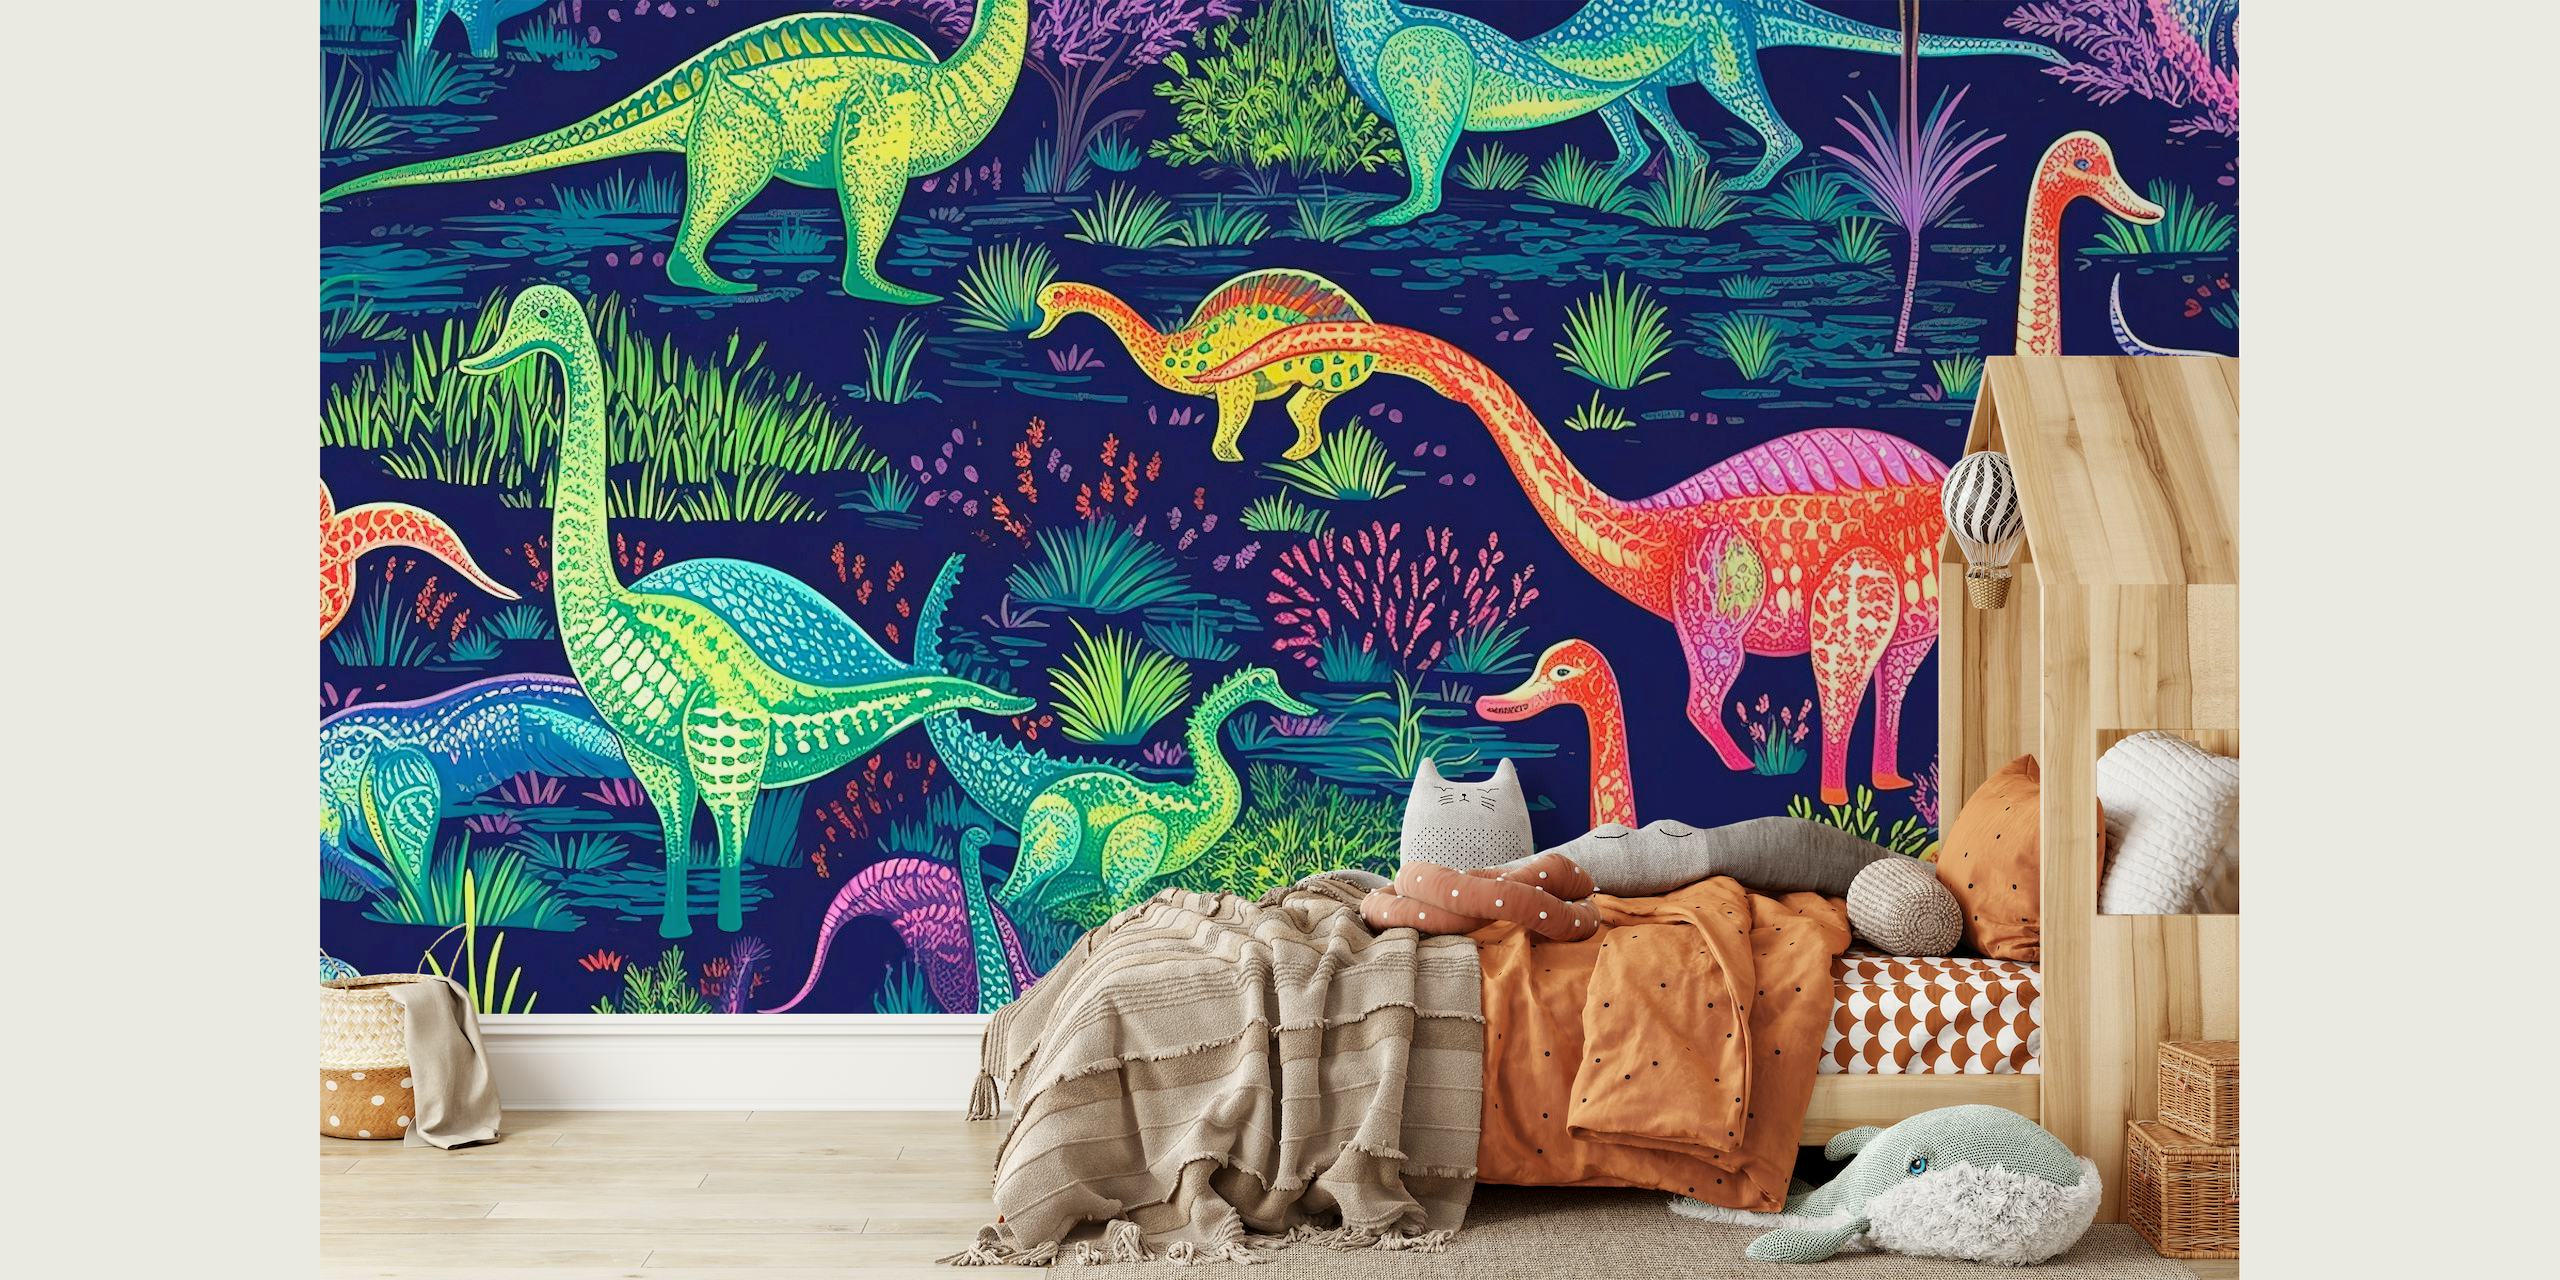 Mural de parede colorido com dinossauros animados em cores fluorescentes contra um fundo pré-histórico